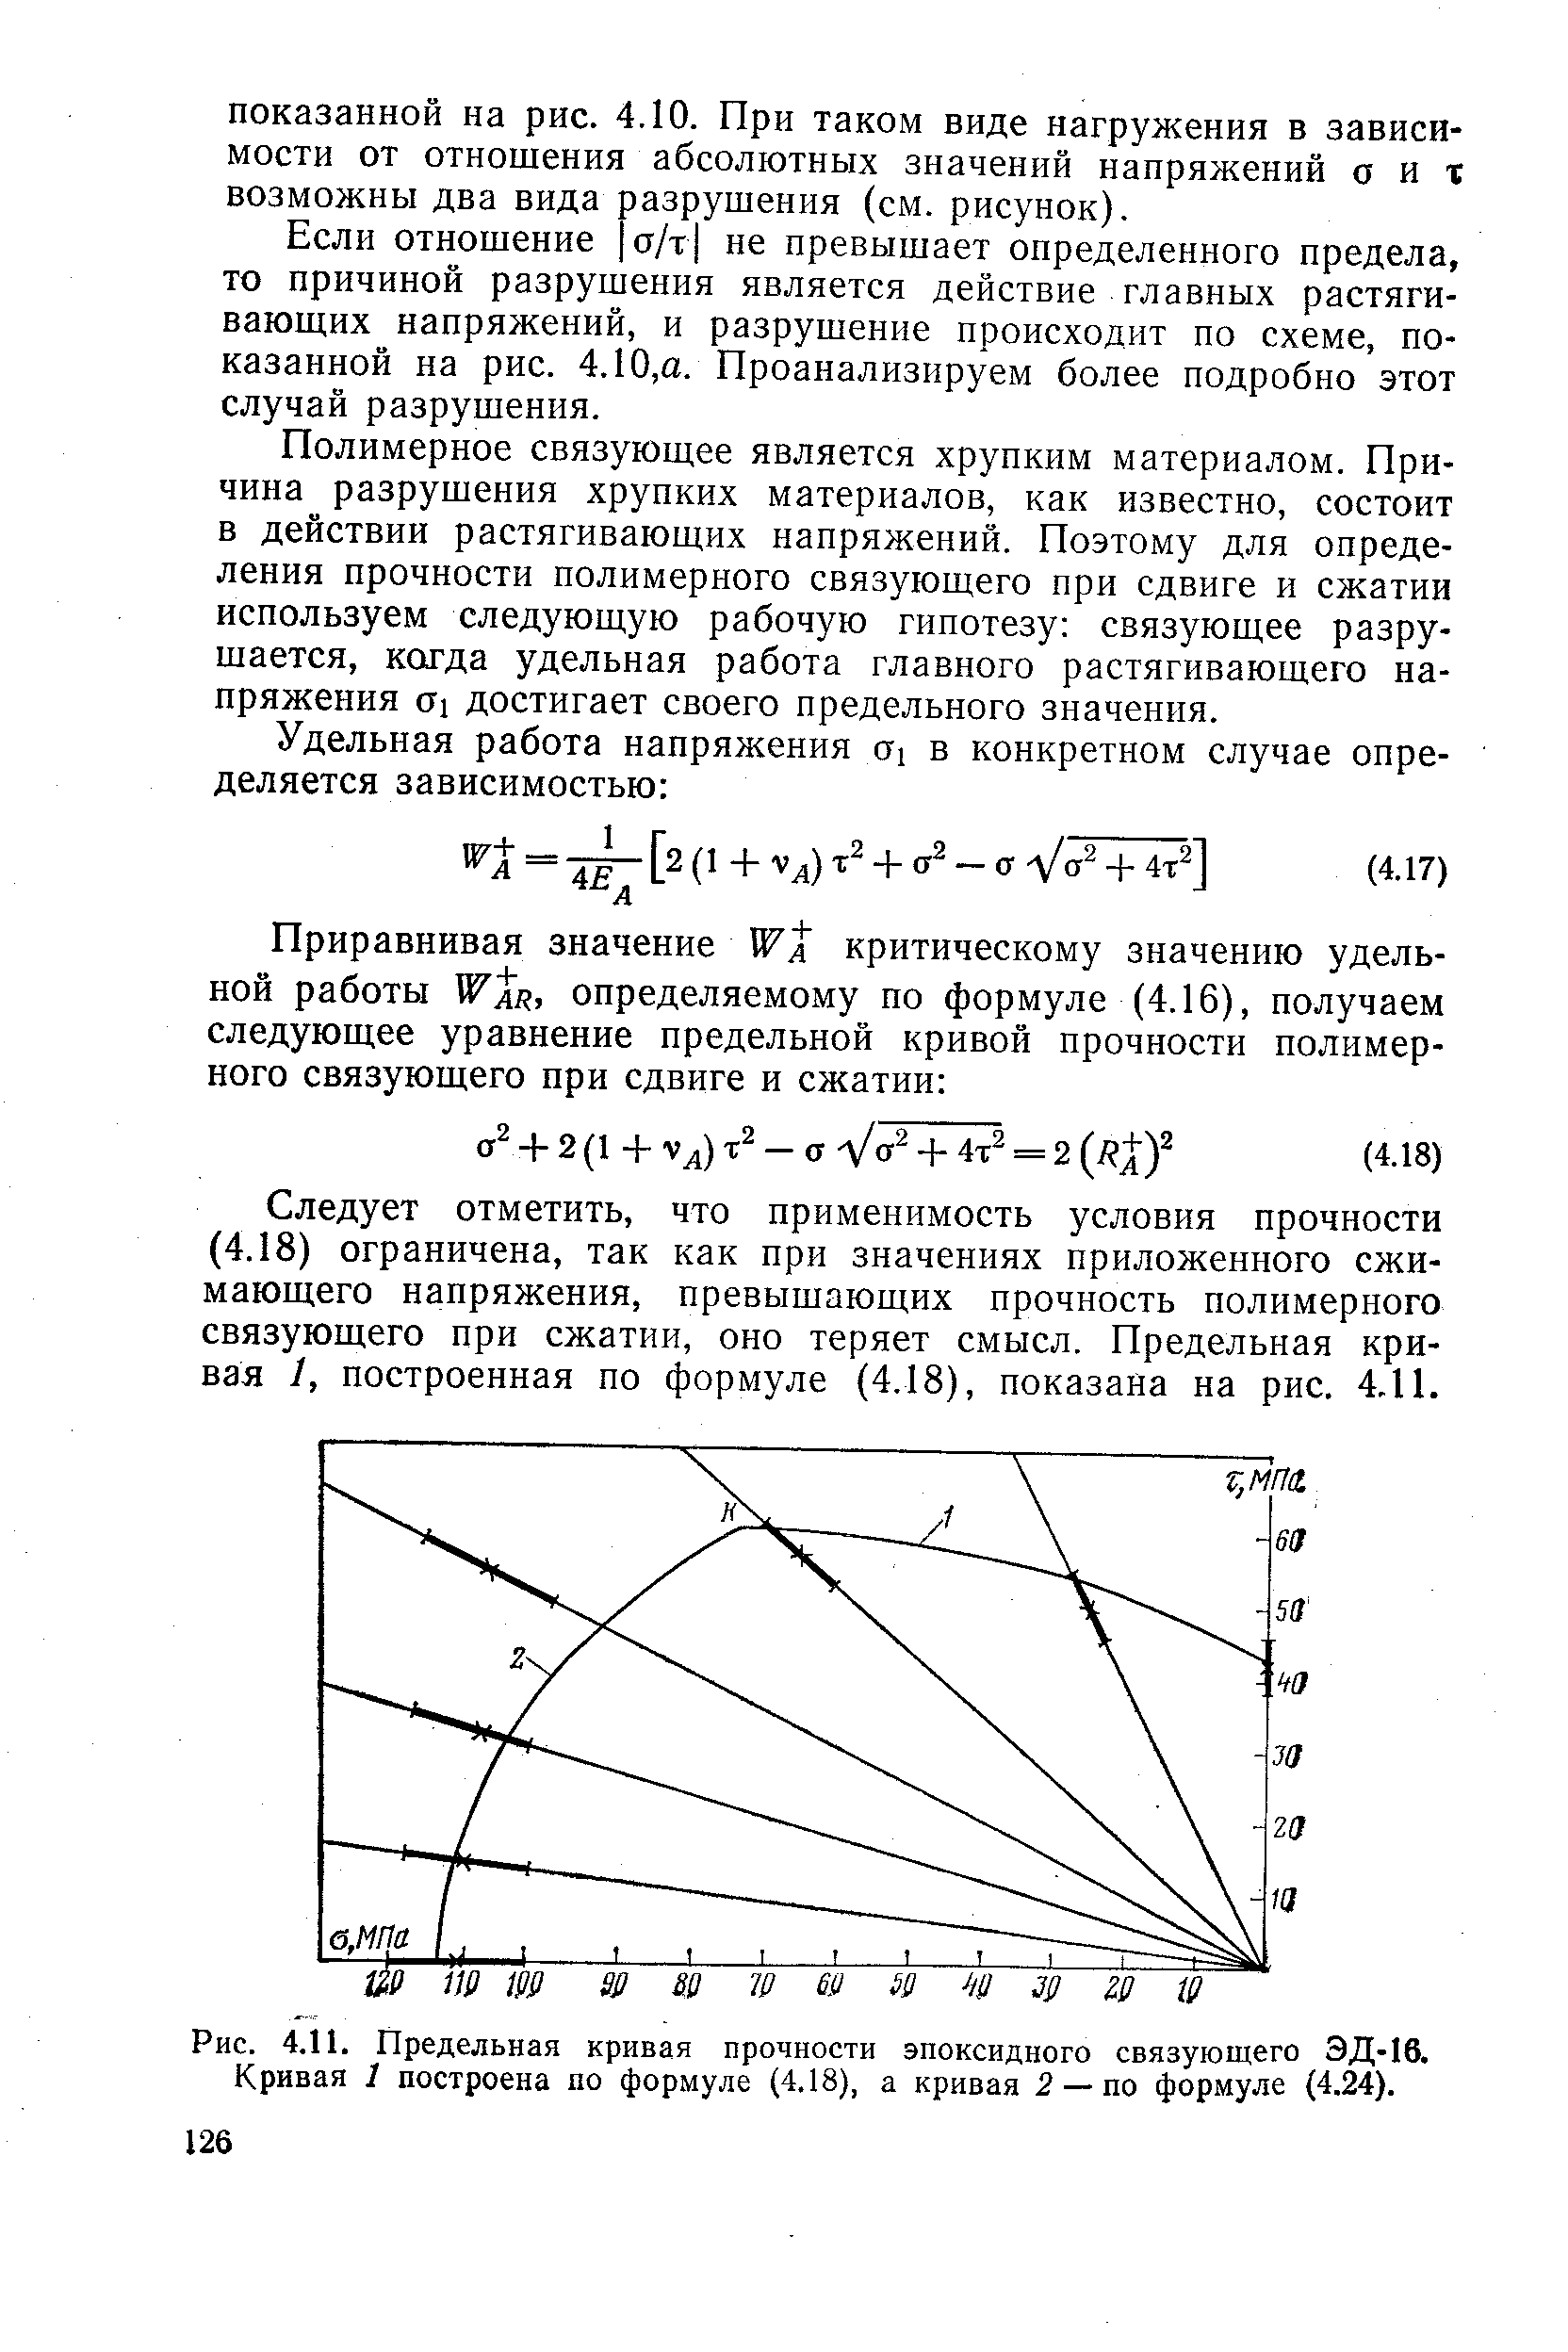 Рис. 4.11. Предельная кривая прочности эпоксидного связующего ЭД-16. Кривая 1 построена по формуле (4.18), а кривая 2 — по формуле (4.24).
